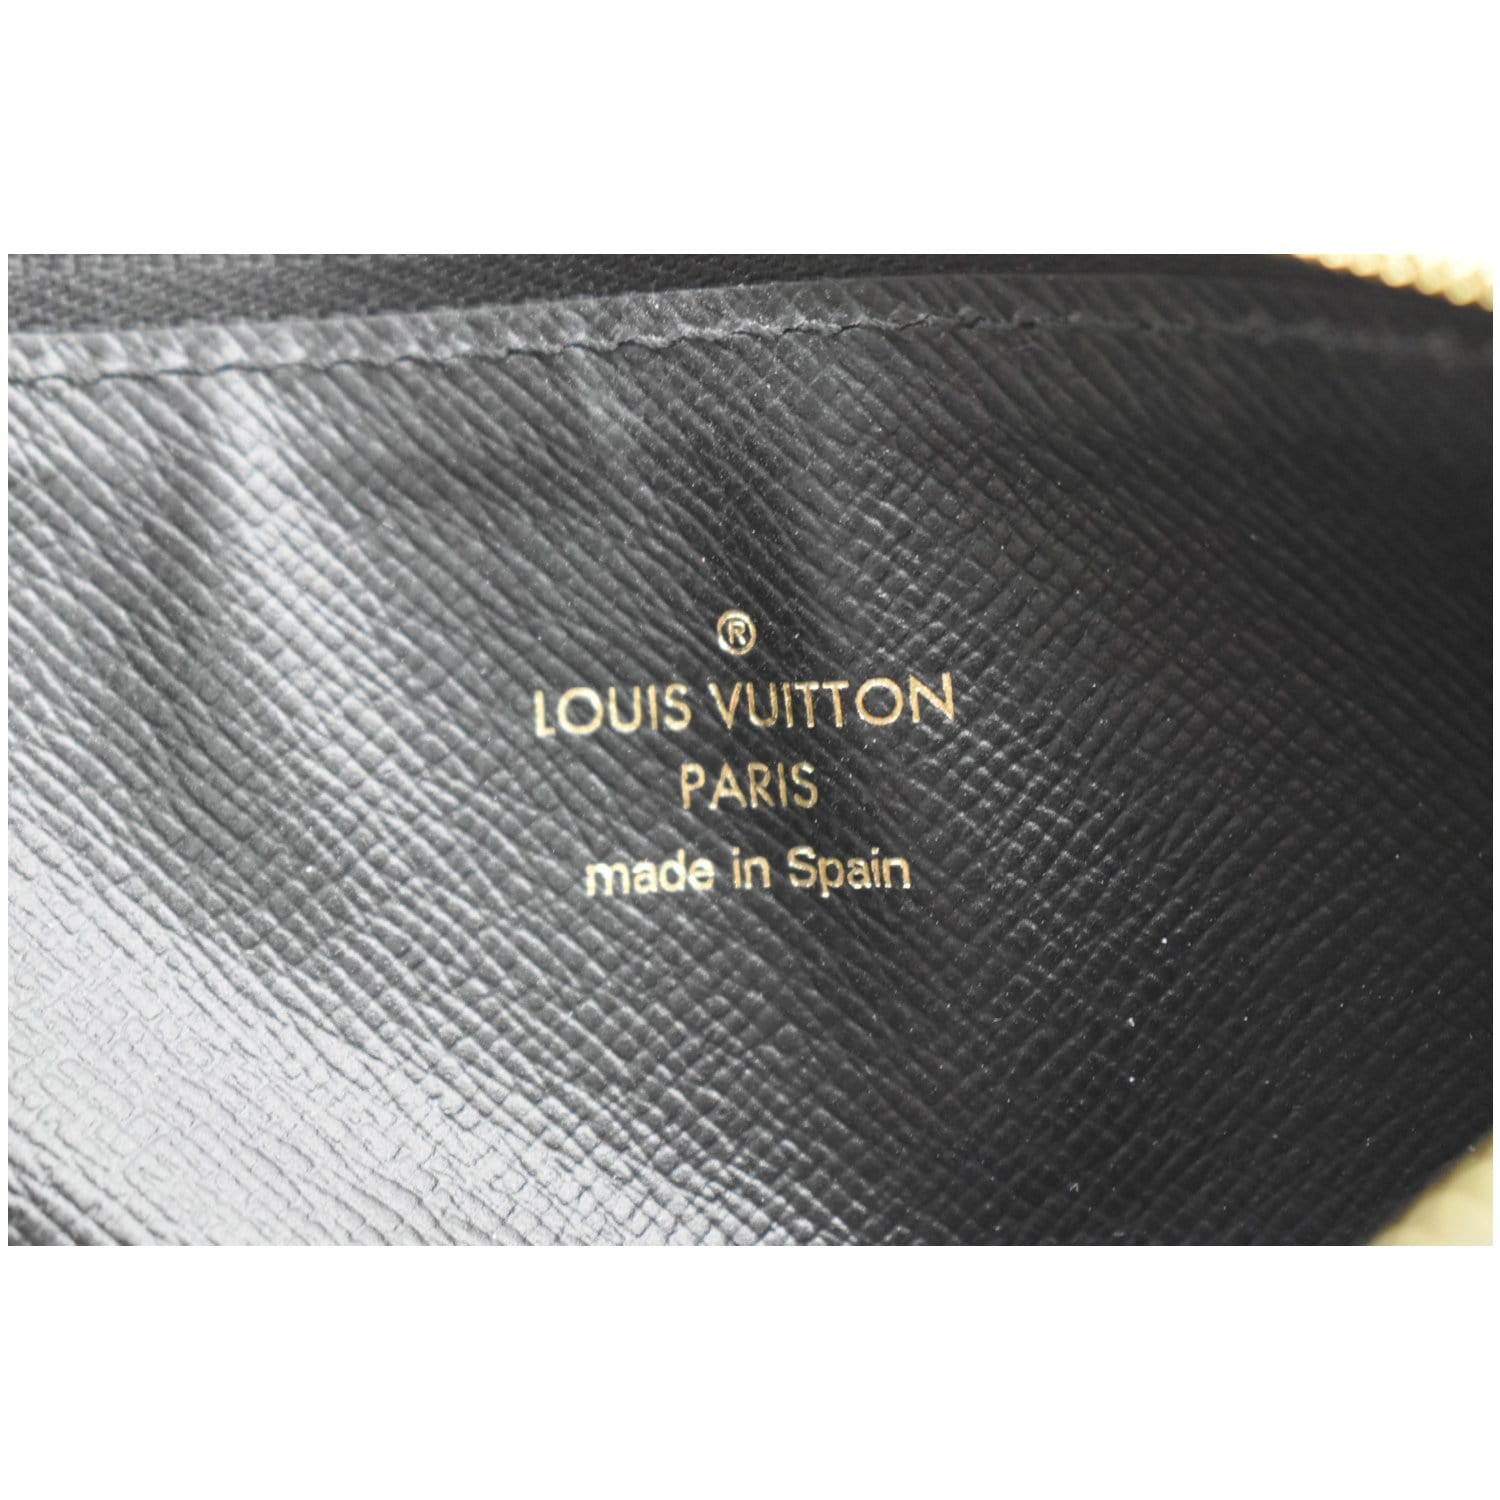 Carteras Louis Vuitton